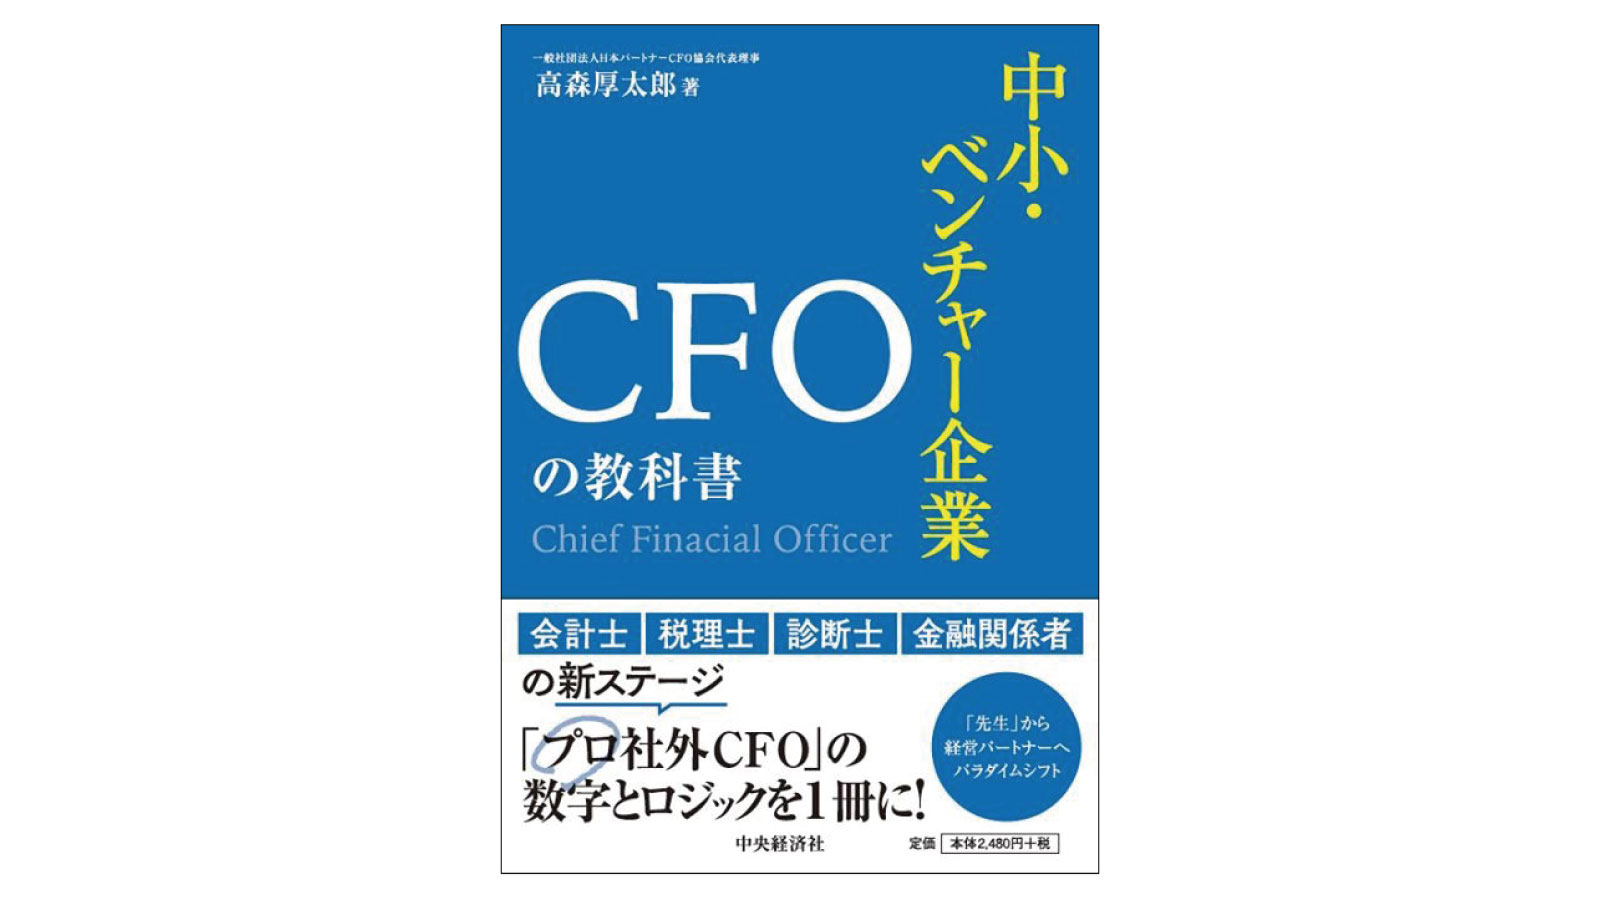 中堅企業のCFOのあるべき姿とは――『中小・ベンチャー企業 CFOの教科書』